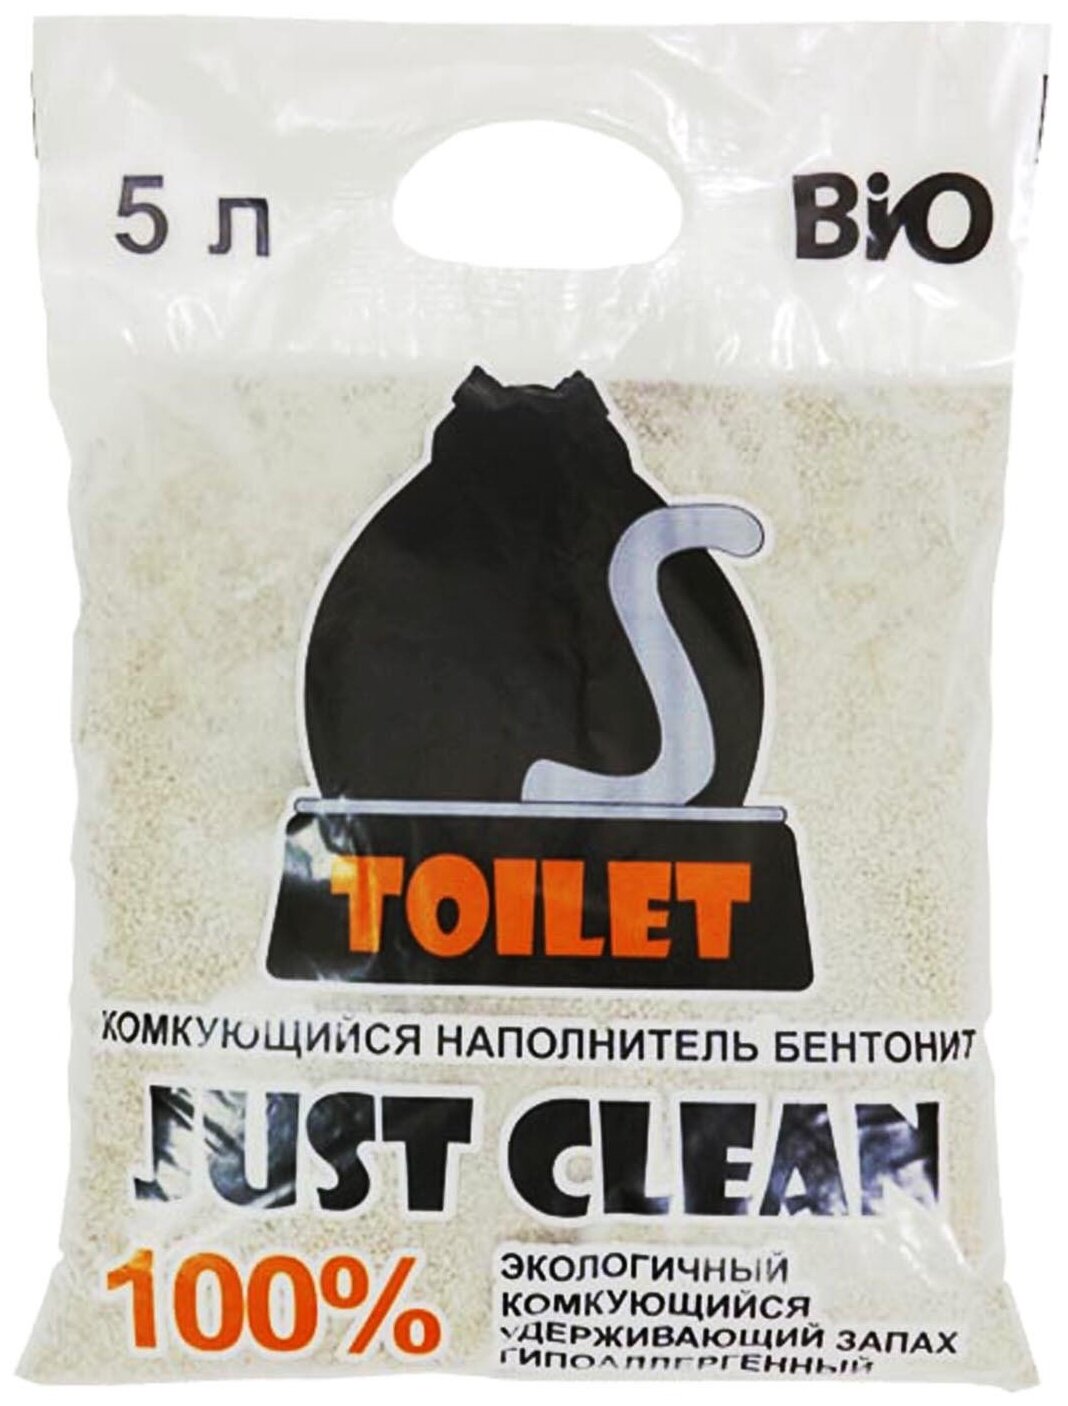 Наполнитель для кошачьего туалета бетонит, комкующийся, гипоаллегренный, удерживает запах, объем 5 литров. Цена за 1 мешок.